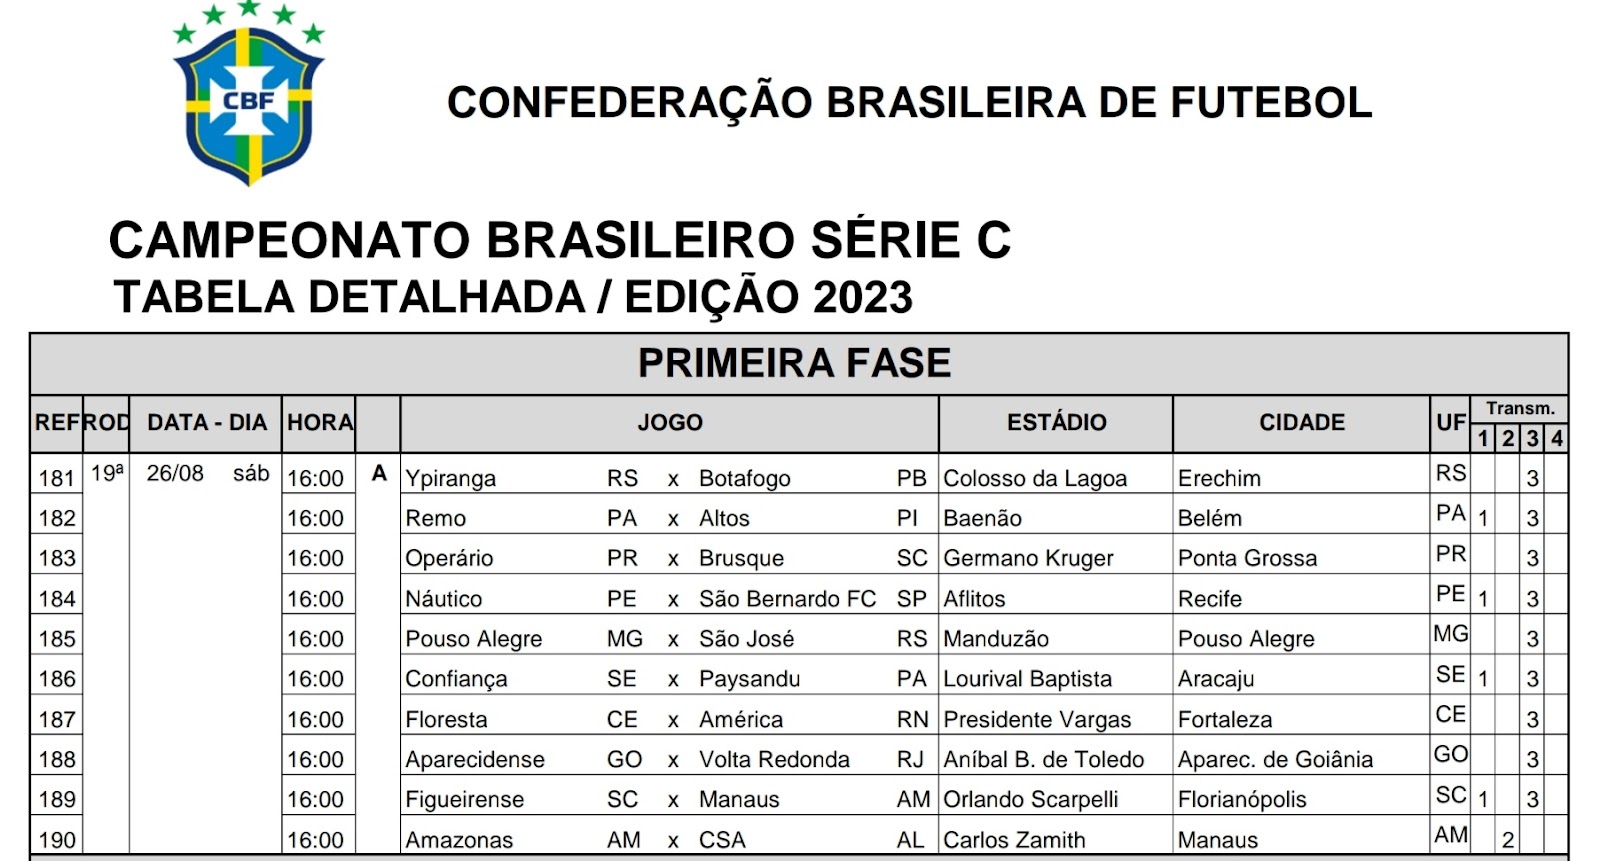 Última rodada do Brasileirão: todos os jogos acontecem na próxima